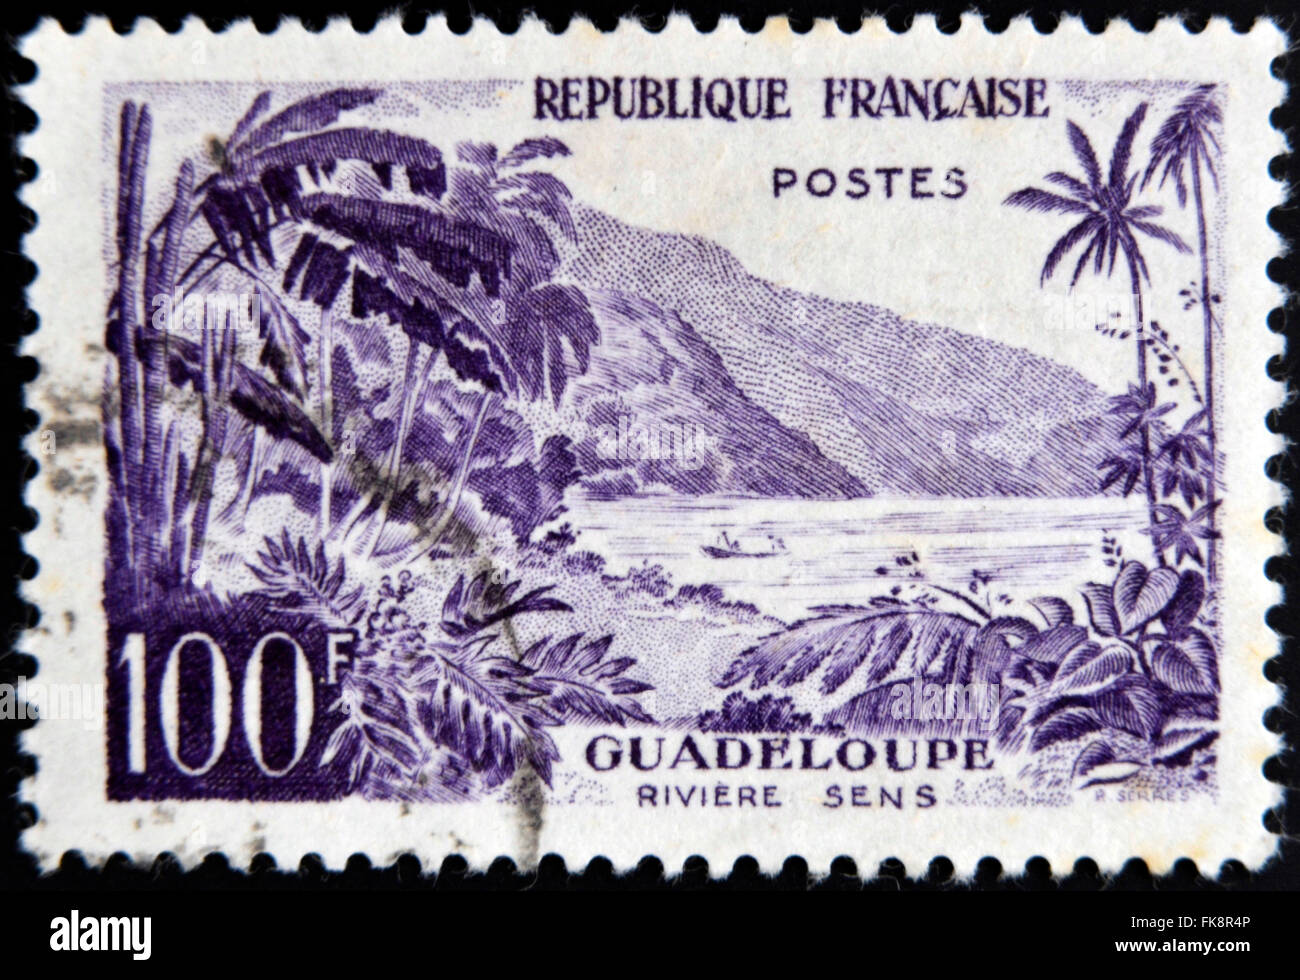 FRANCE - VERS 1957 : timbres en France montre la Guadeloupe, Sens rivière, vers 1957 Banque D'Images